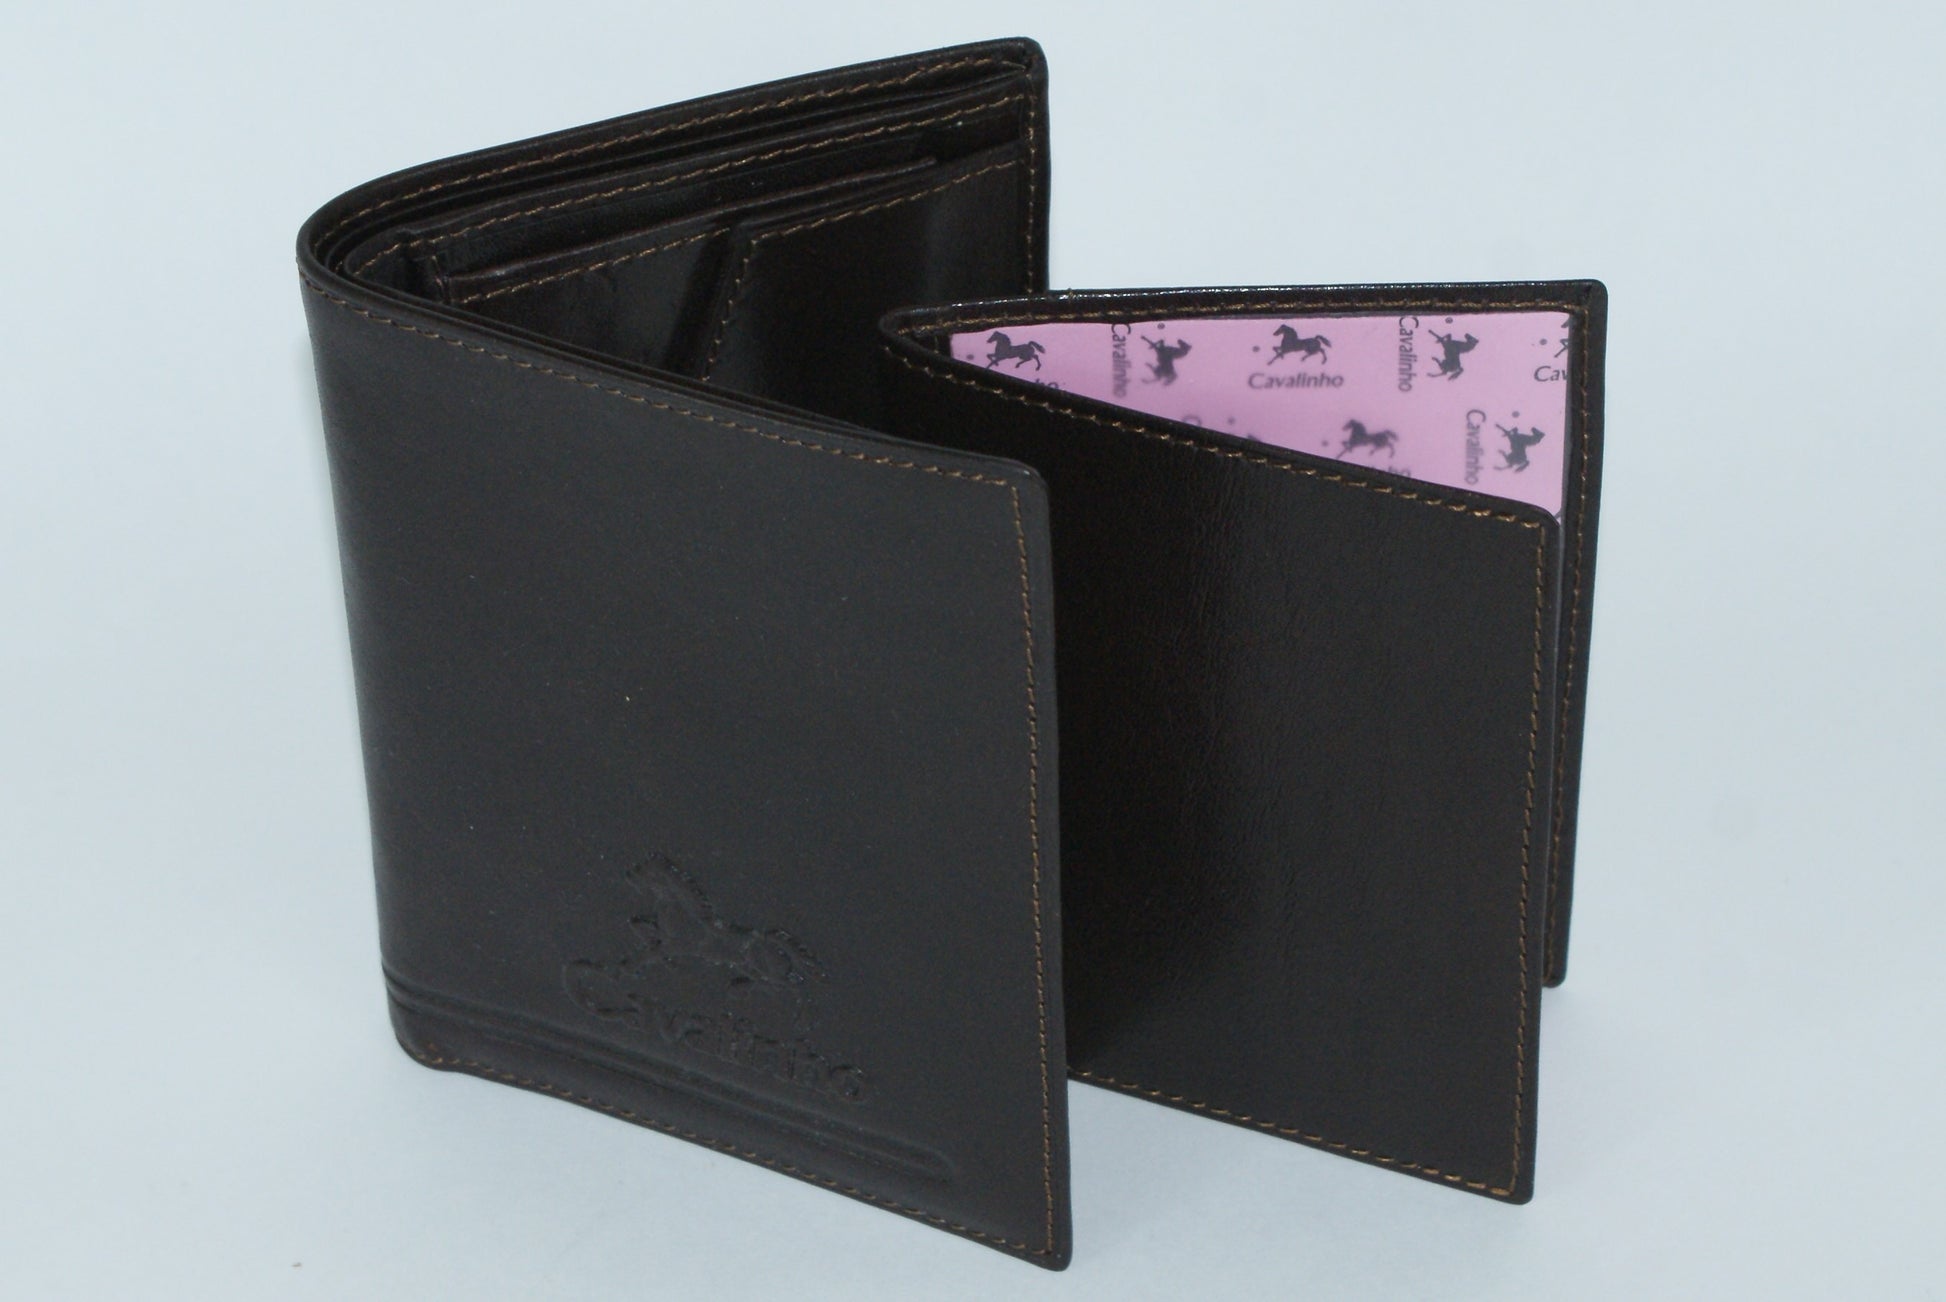 #color_ Black | Cavalinho Men's 2 in 1 Bifold Leather Wallet - Black - MWBR-2510551-3